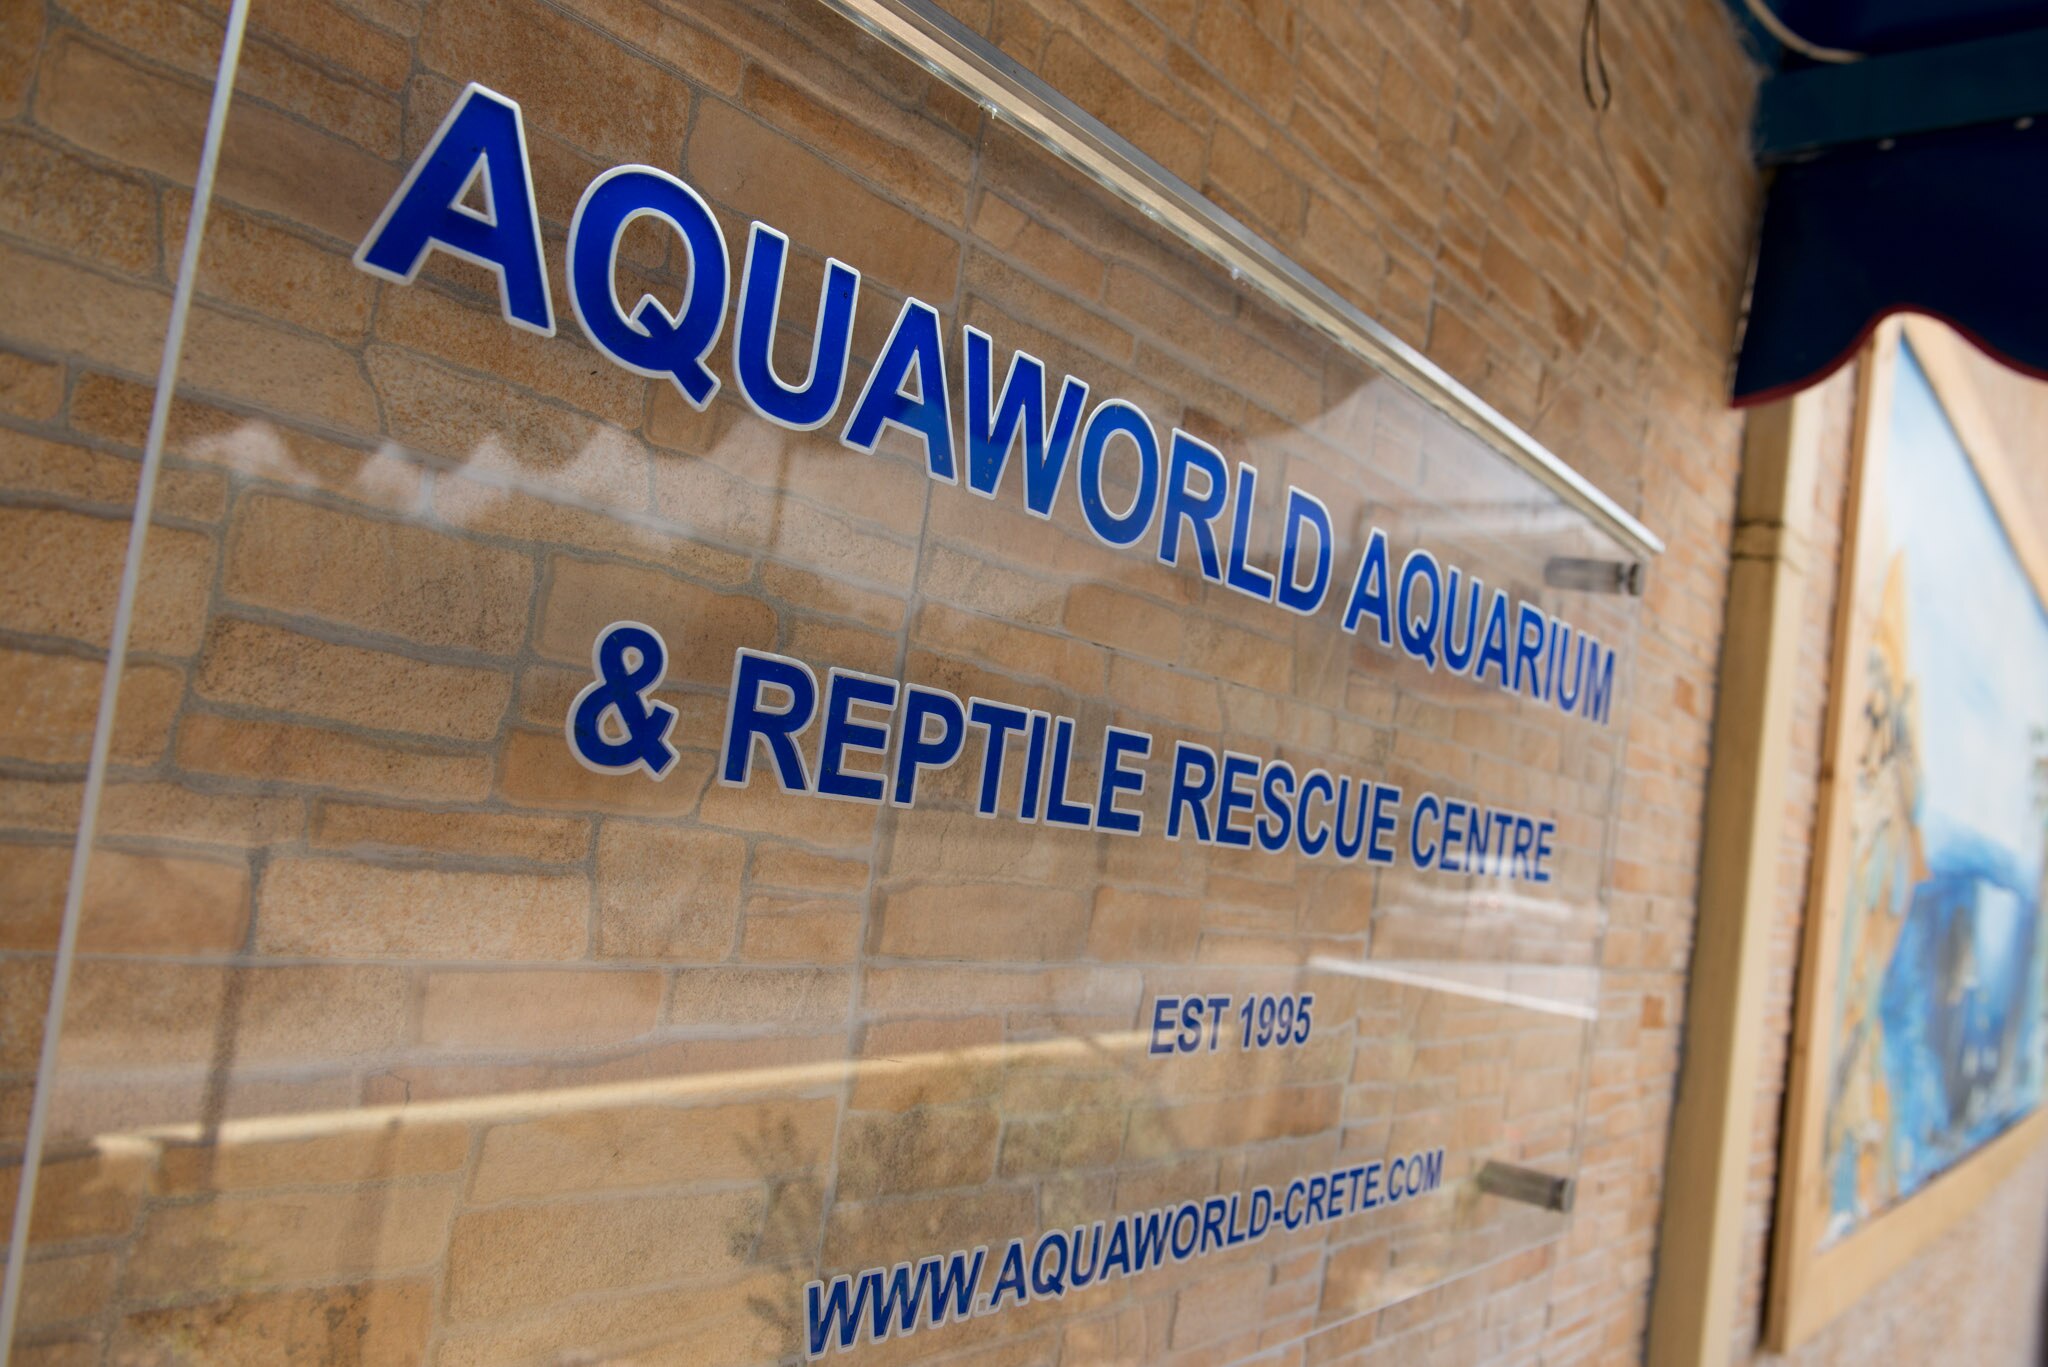 Aquaworld Aquarium & Reptile Rescue Centre